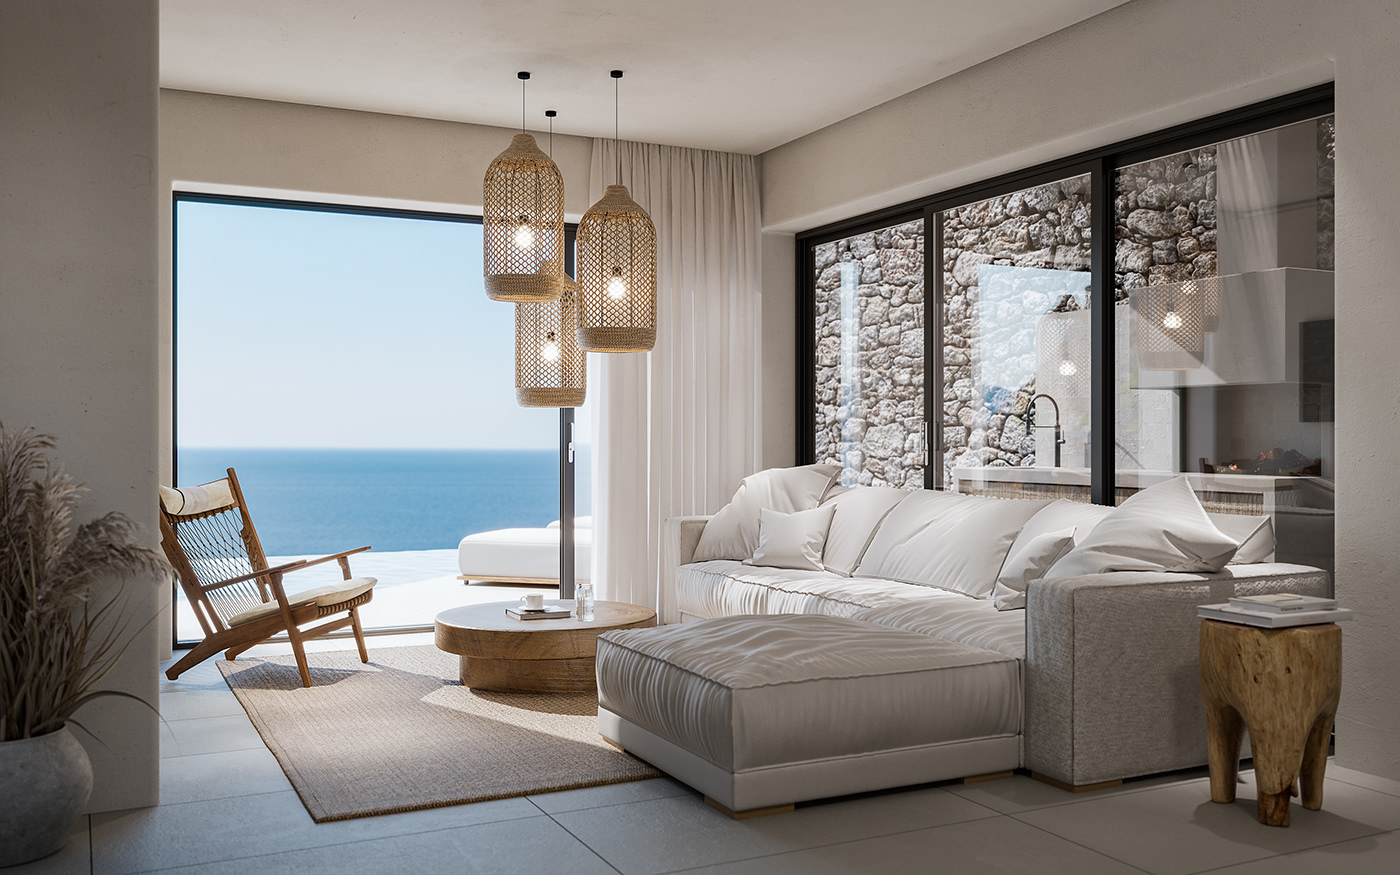 3ds max architecture corona design Greece Interior Pool Villa visualisation